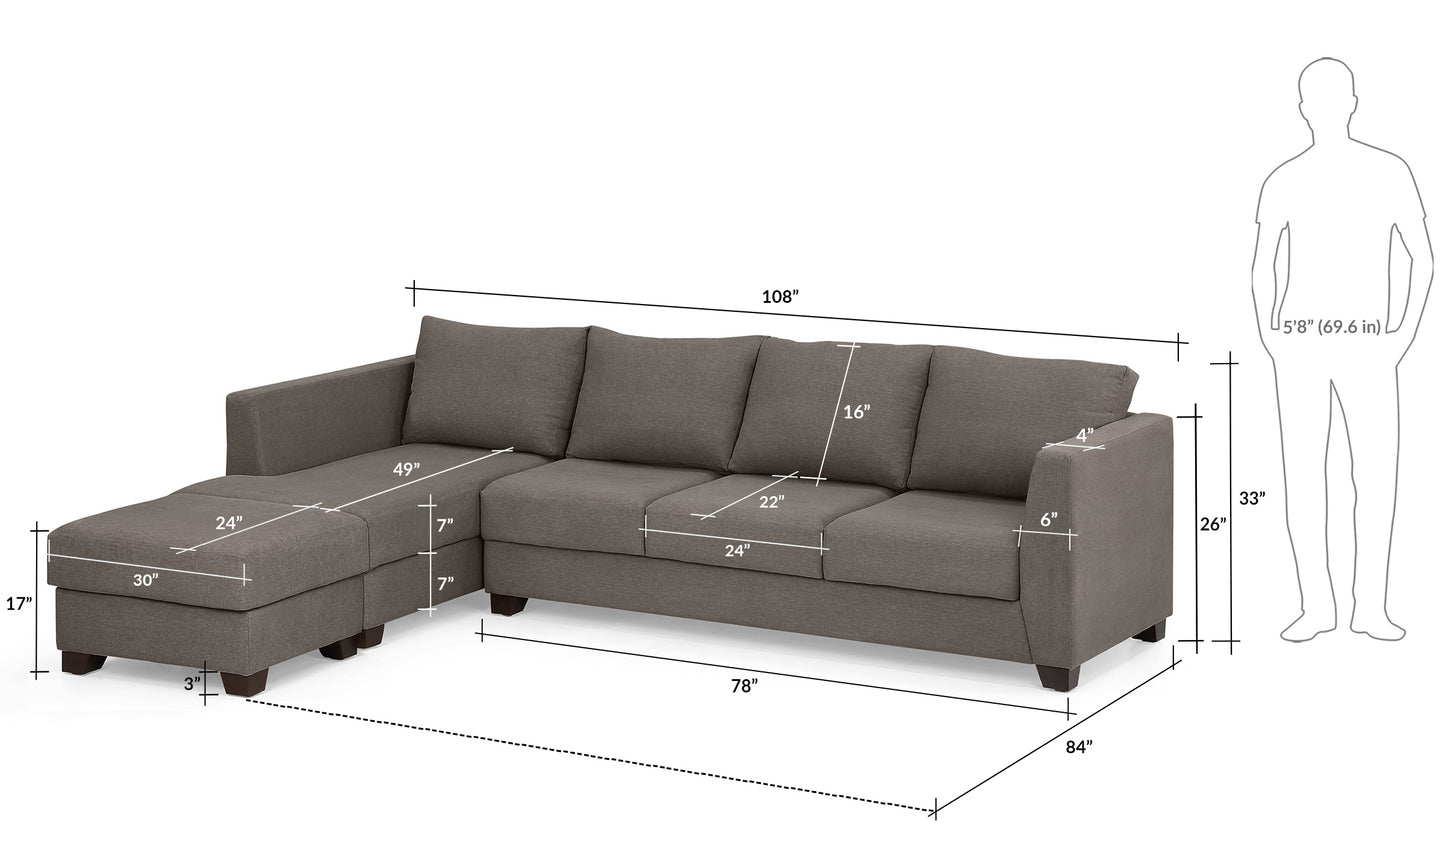 Elton Sectional Sofa 3 Seater